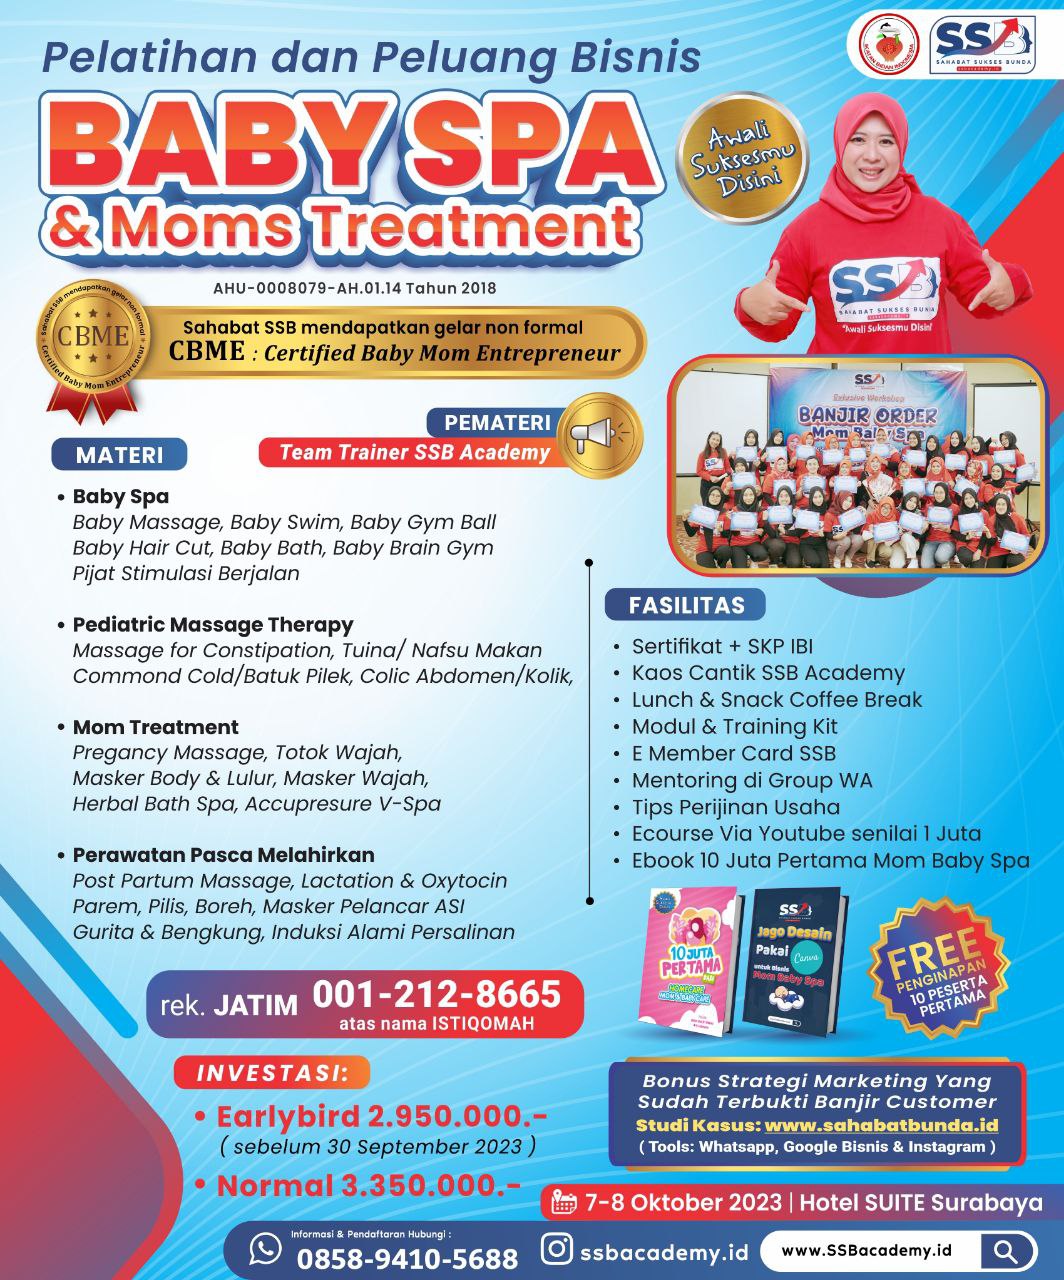 Pelatihan Baby Spa Bersertifikat di Bombana Bersertifikat CBME ( Certified Baby Moms Entrepreneur )